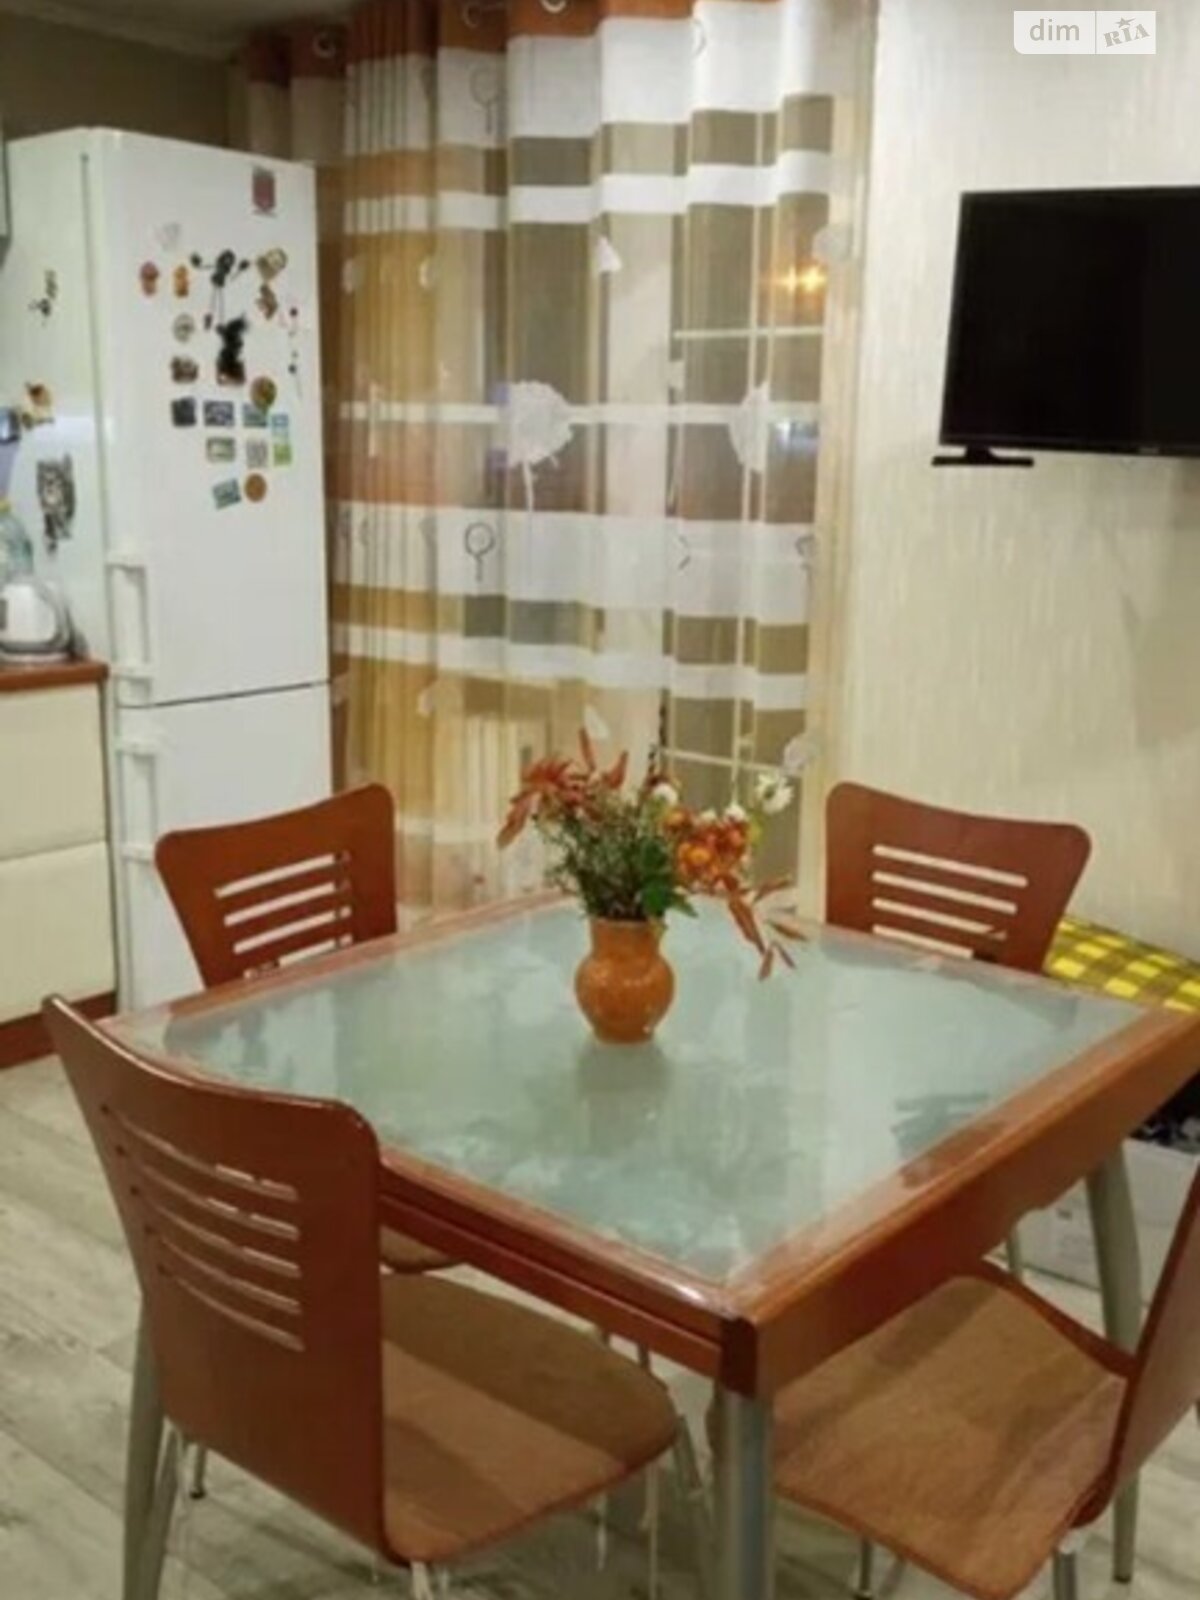 Продажа трехкомнатной квартиры в Днепре, на ул. Рабочая, район Чечеловский фото 1